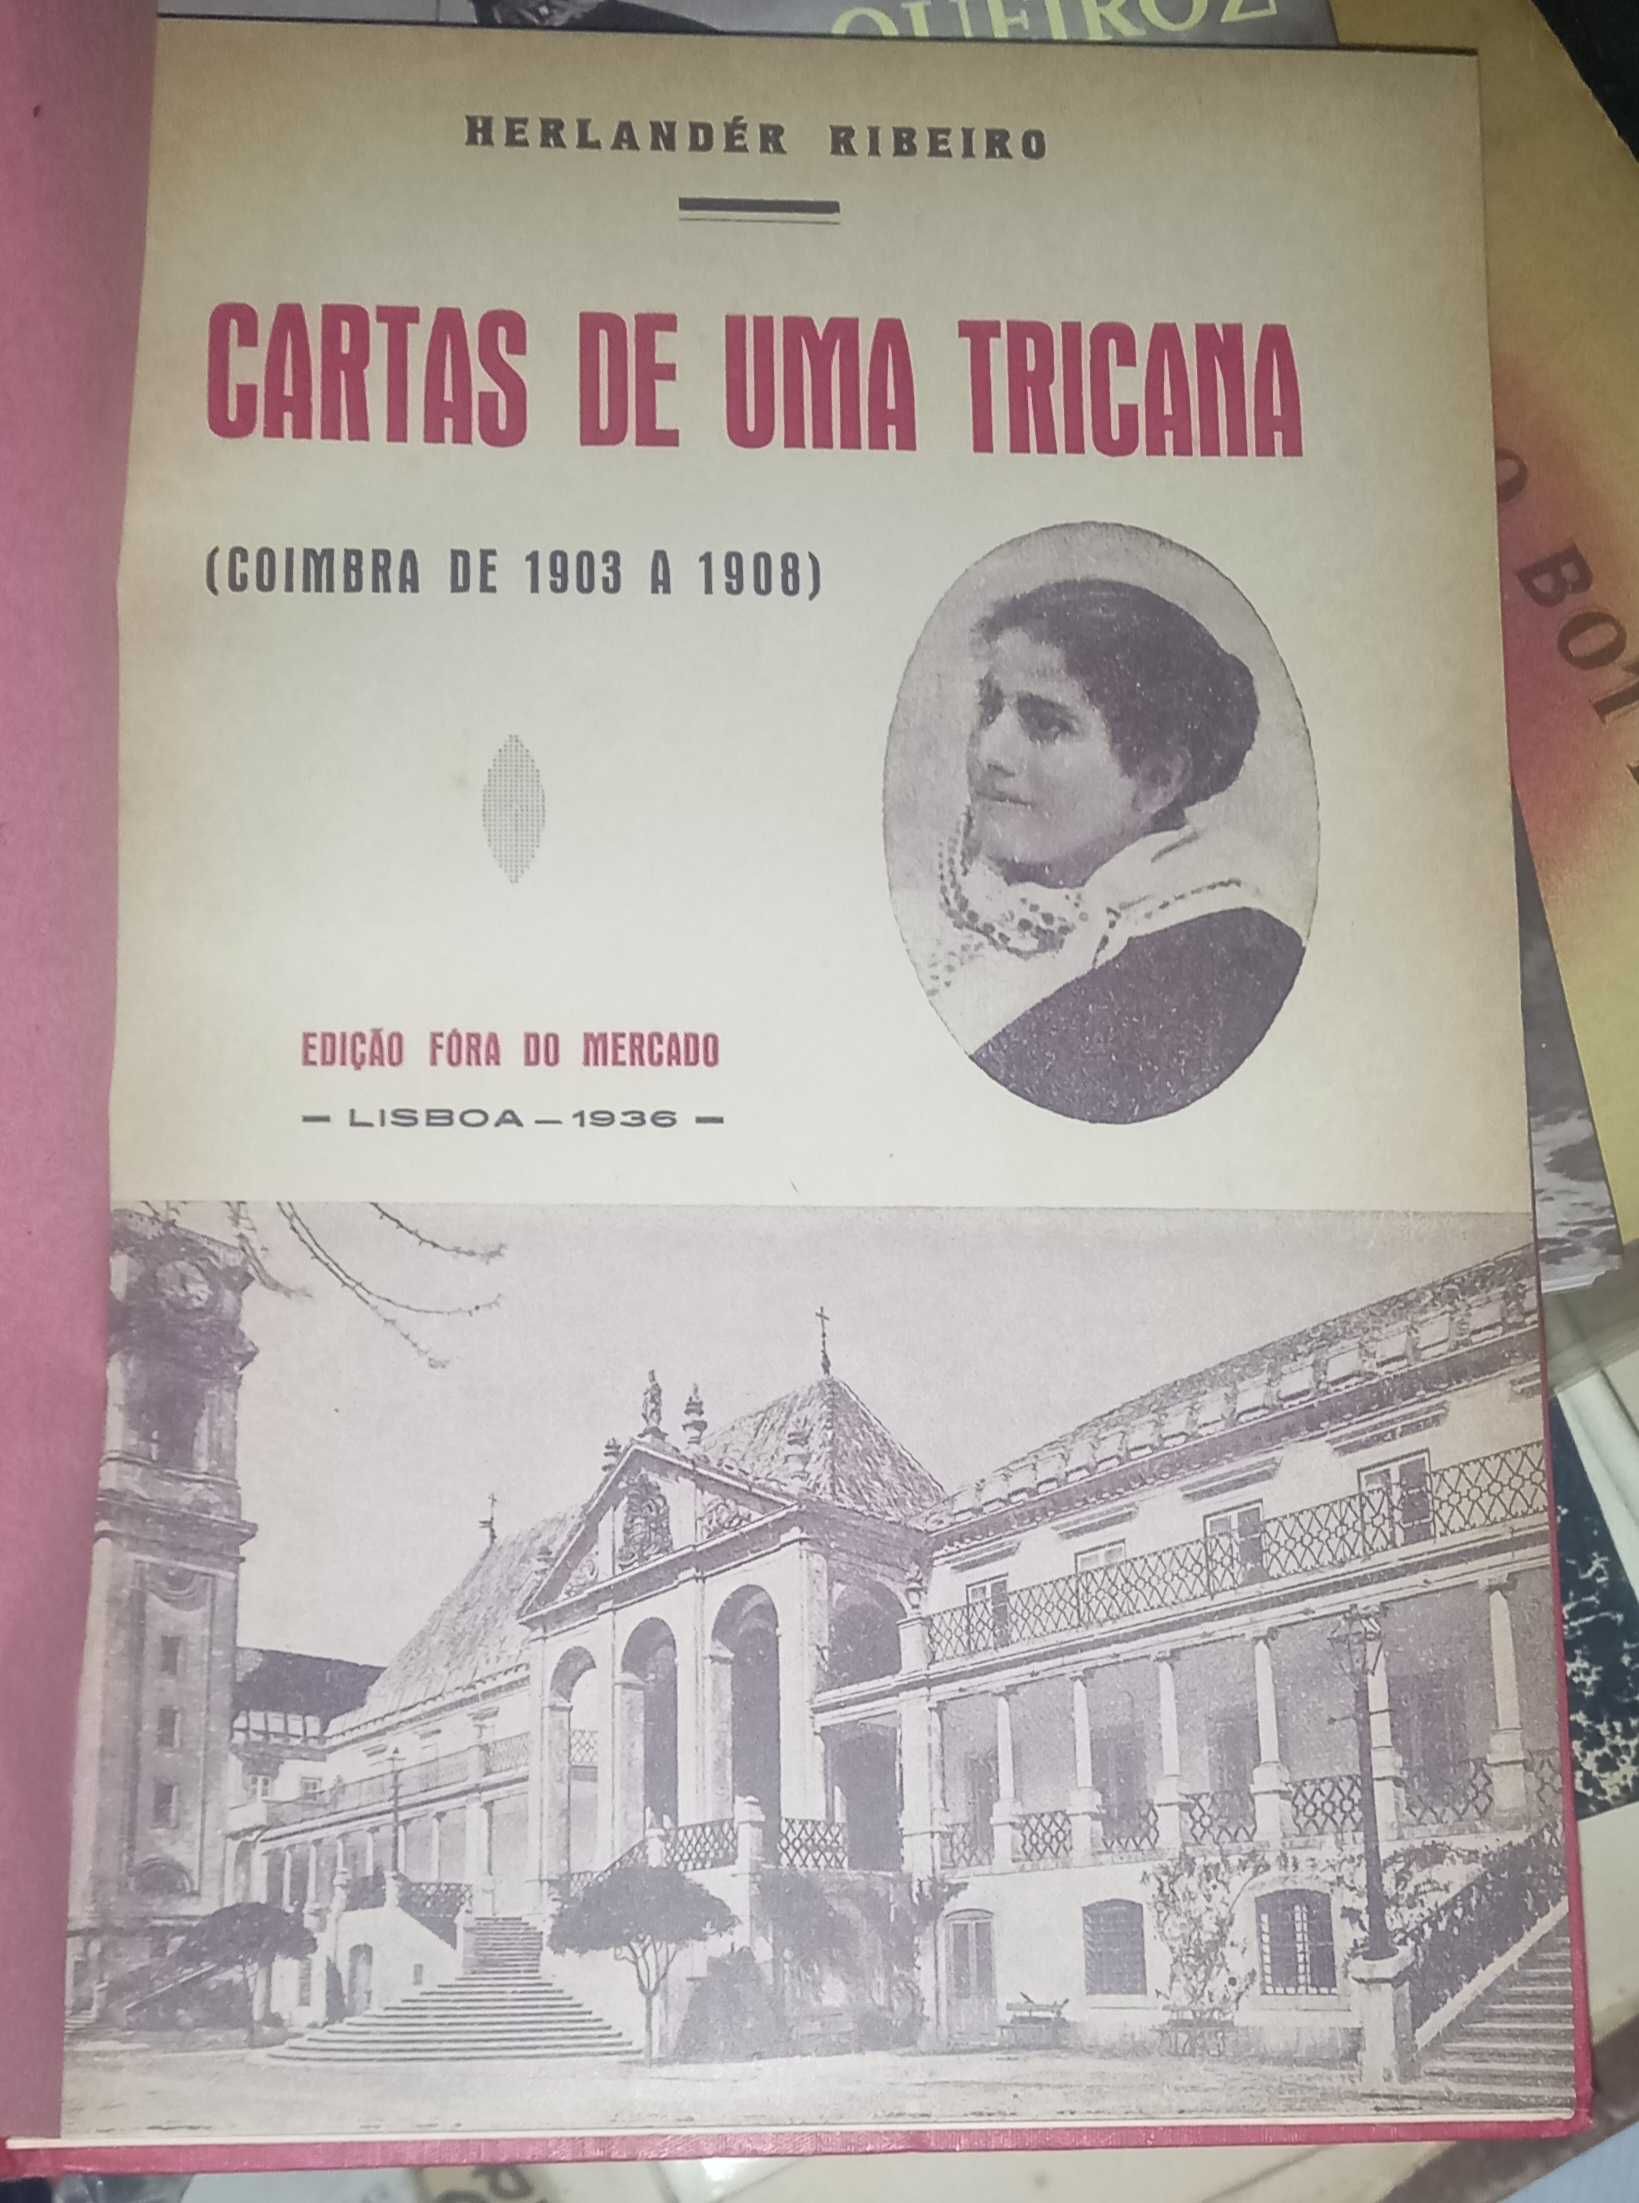 Cartas de uma tricana, de Herlandér Ribeiro.
(Coimbra de 1903 a 1908)